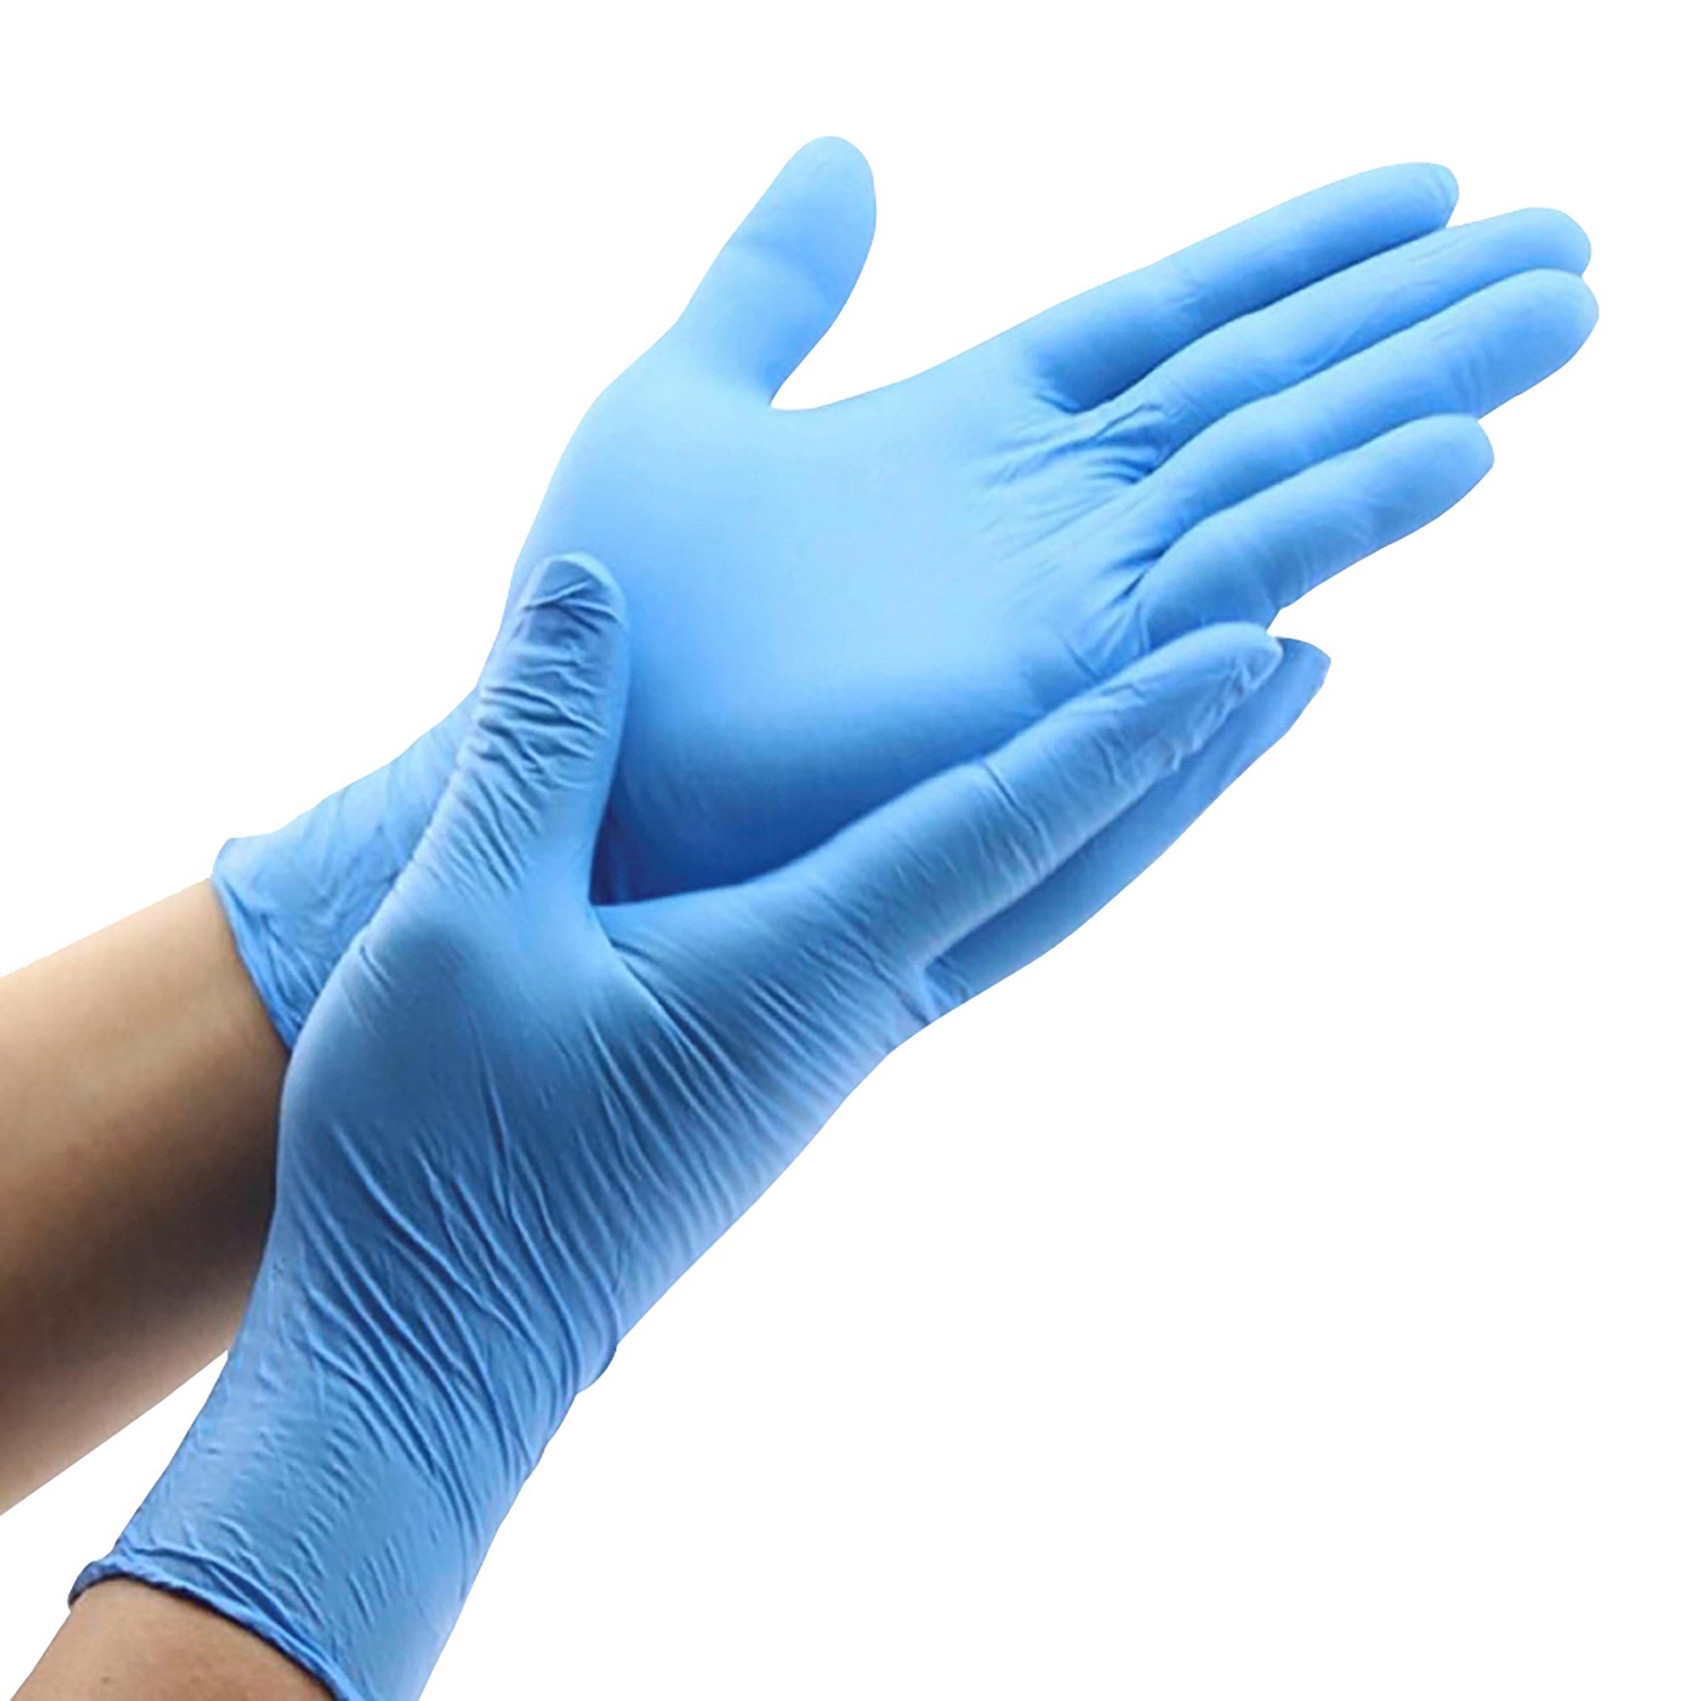 100 gants nitrile bleu - Taille XL, jetables, non poudrés, bords